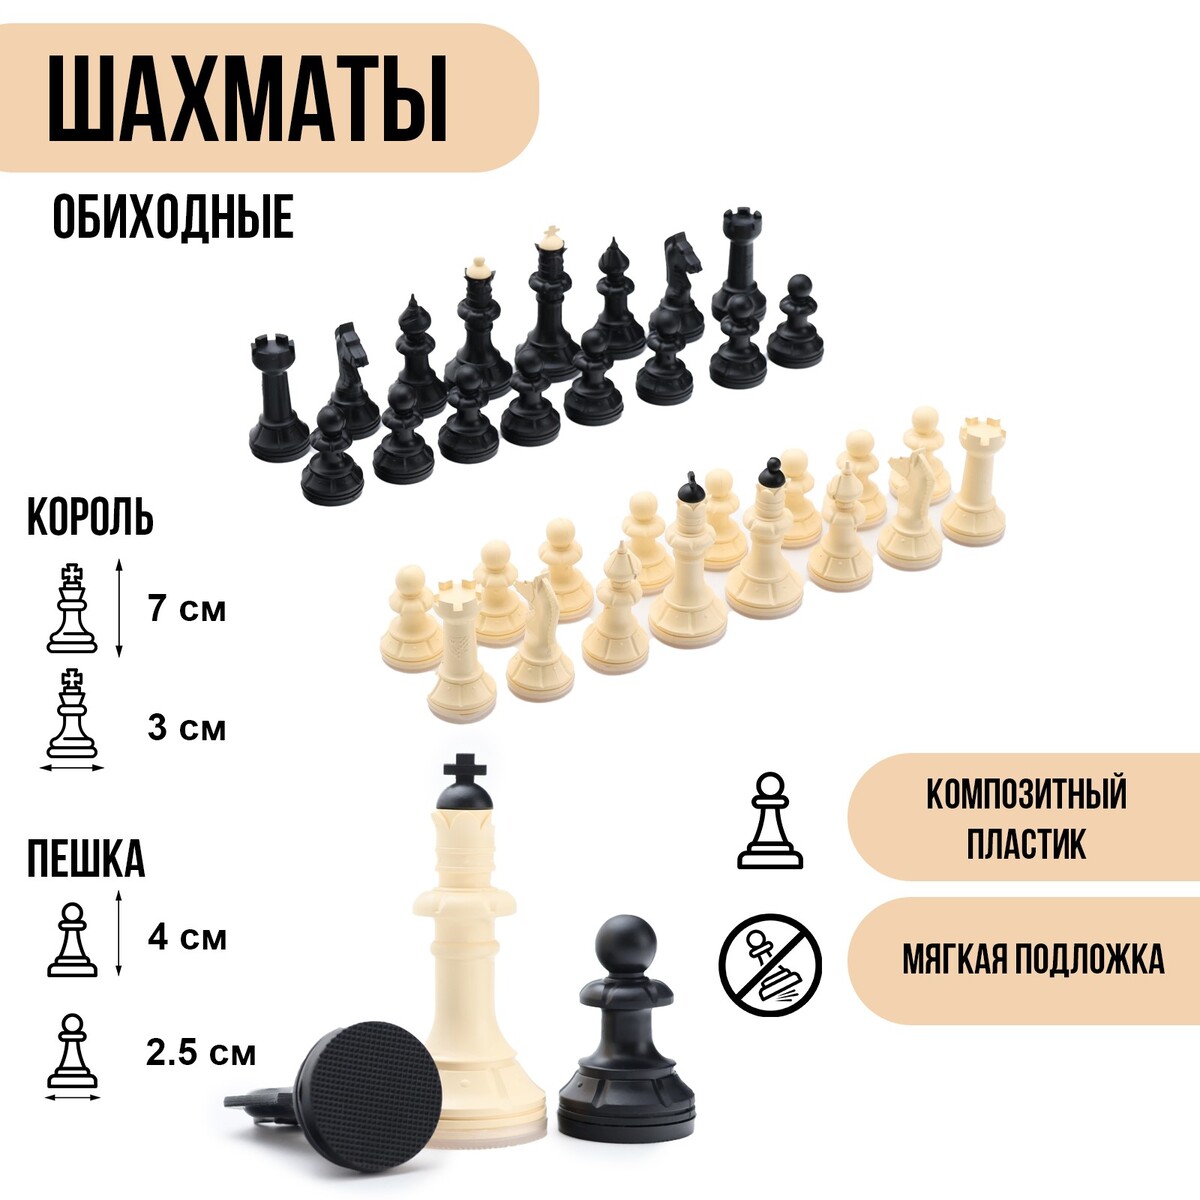 Шахматные фигуры обиходные, король h=7 см, пешка-4 см, пластик король крыс